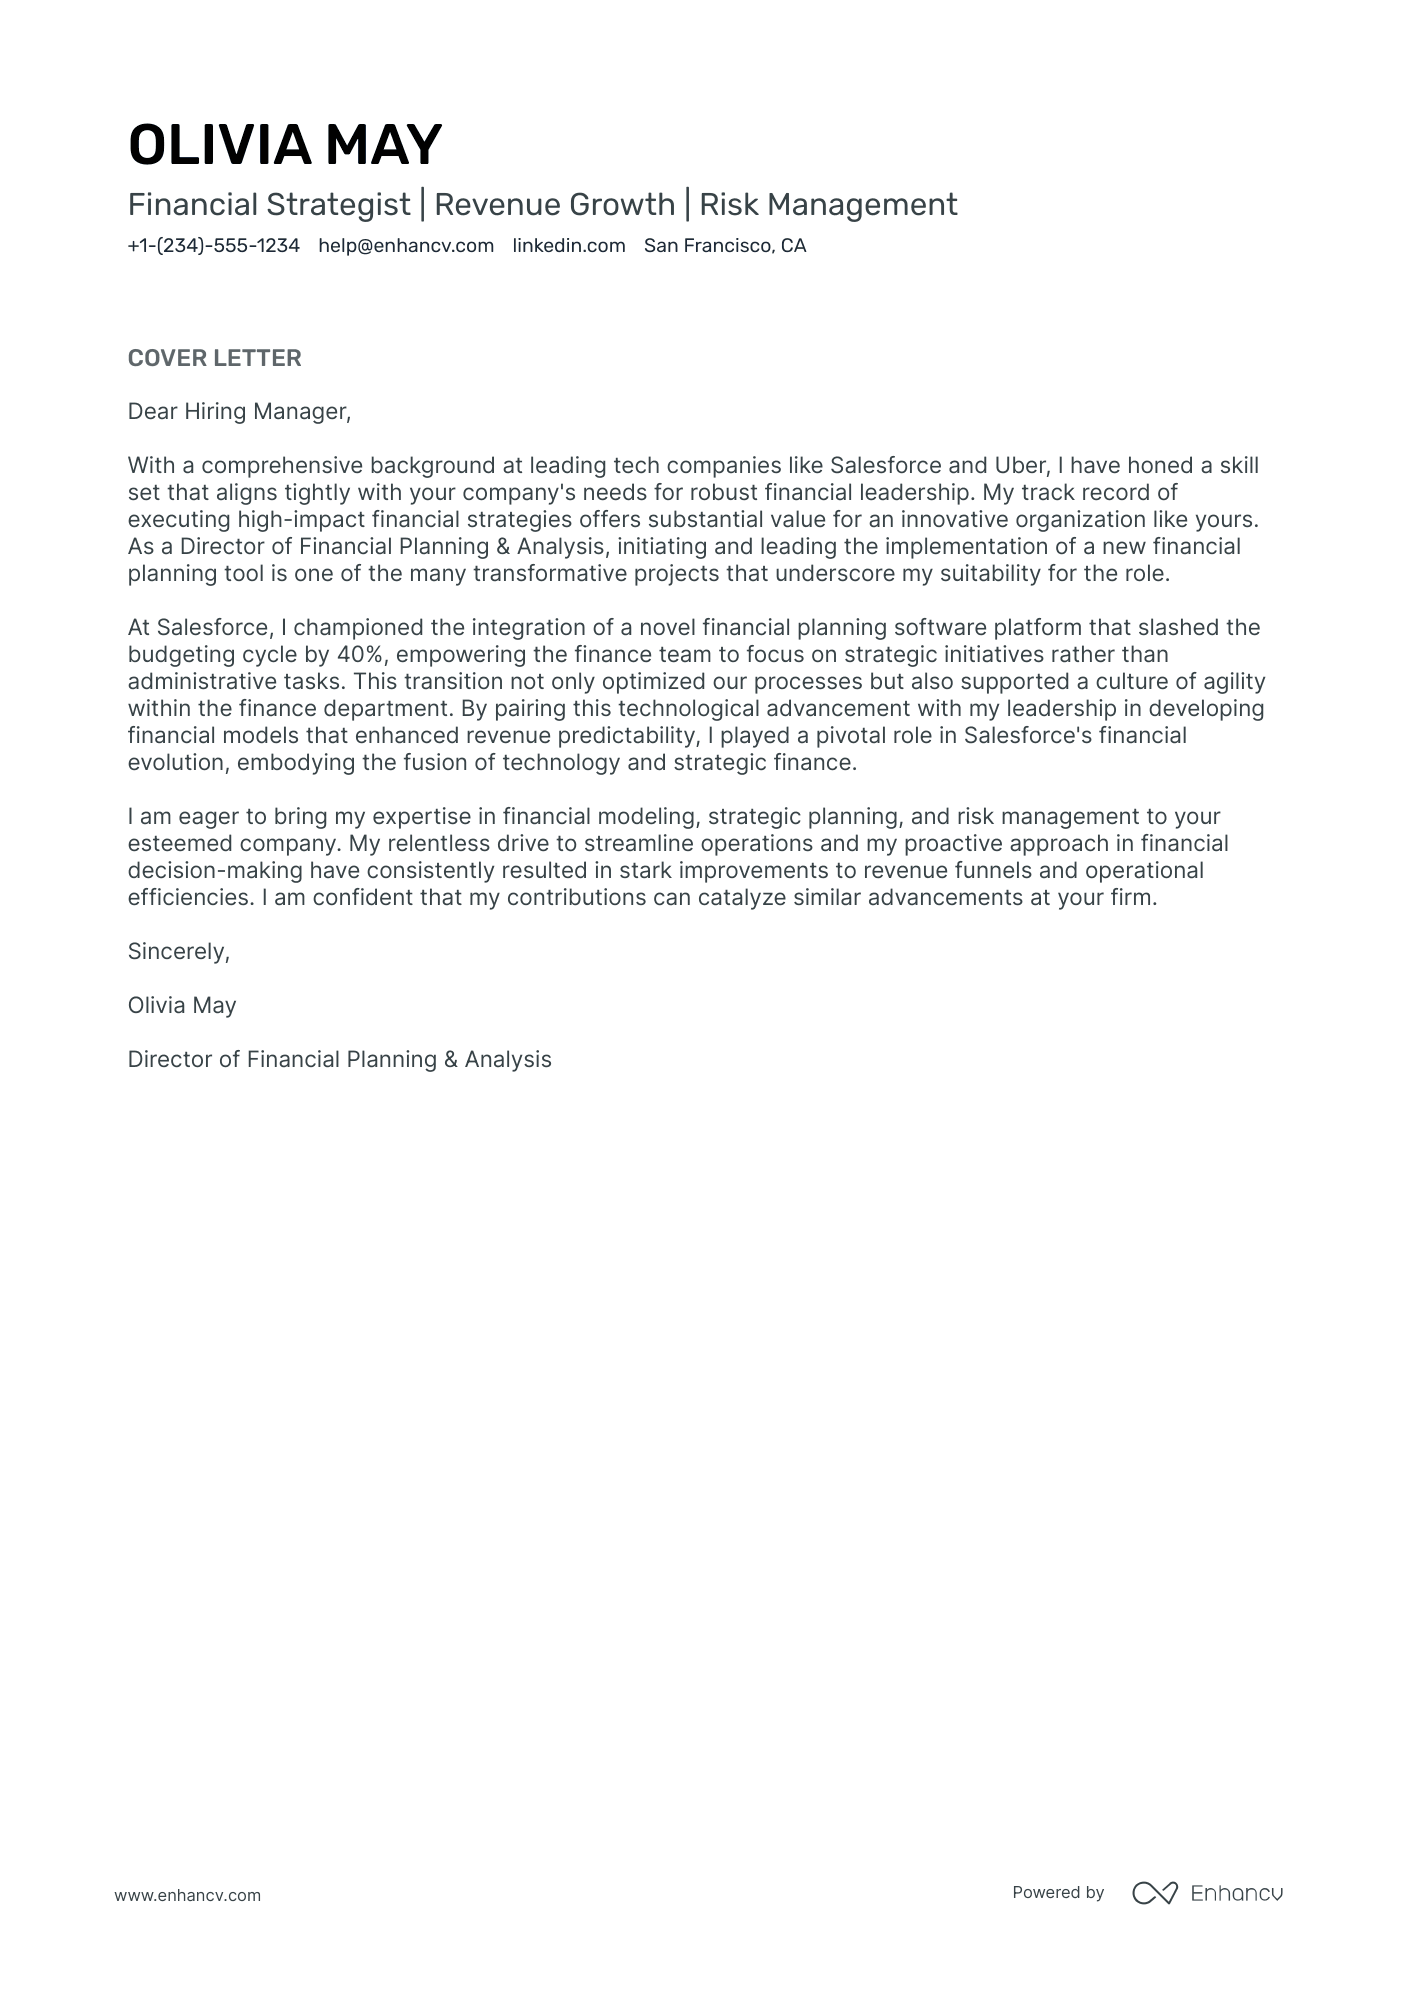 VP of Finance cover letter